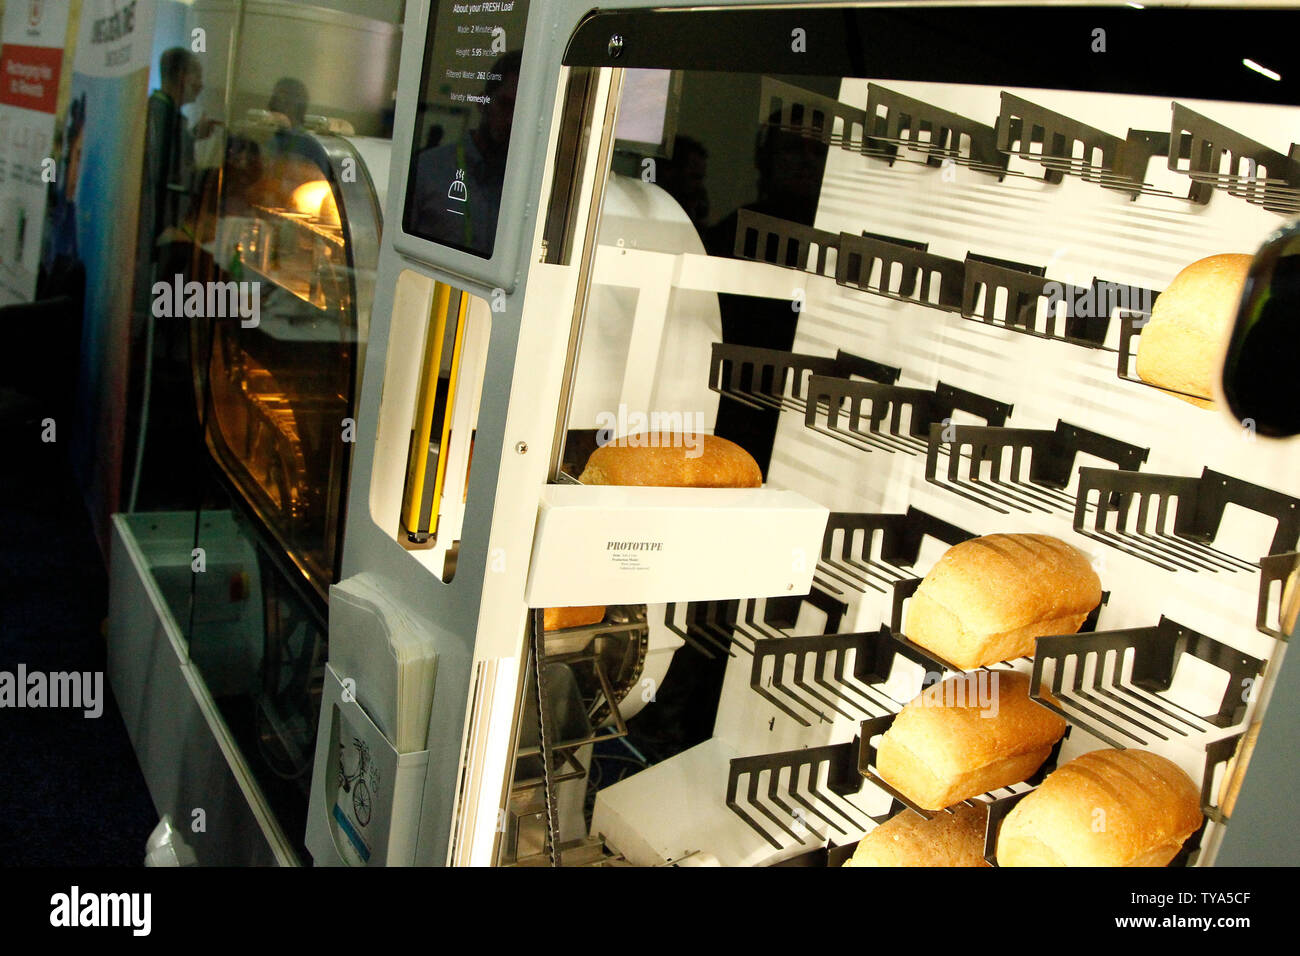 Une vue de l'Breadbot, une boulangerie et un mini distributeur automatique par le Wilkinson Baking Company de l'afficheur pendant l'International CES 2019, au Mandalay Bay Convention Center de Las Vegas, Nevada, le 6 janvier 2019. Photo de James Atoa/UPI Banque D'Images